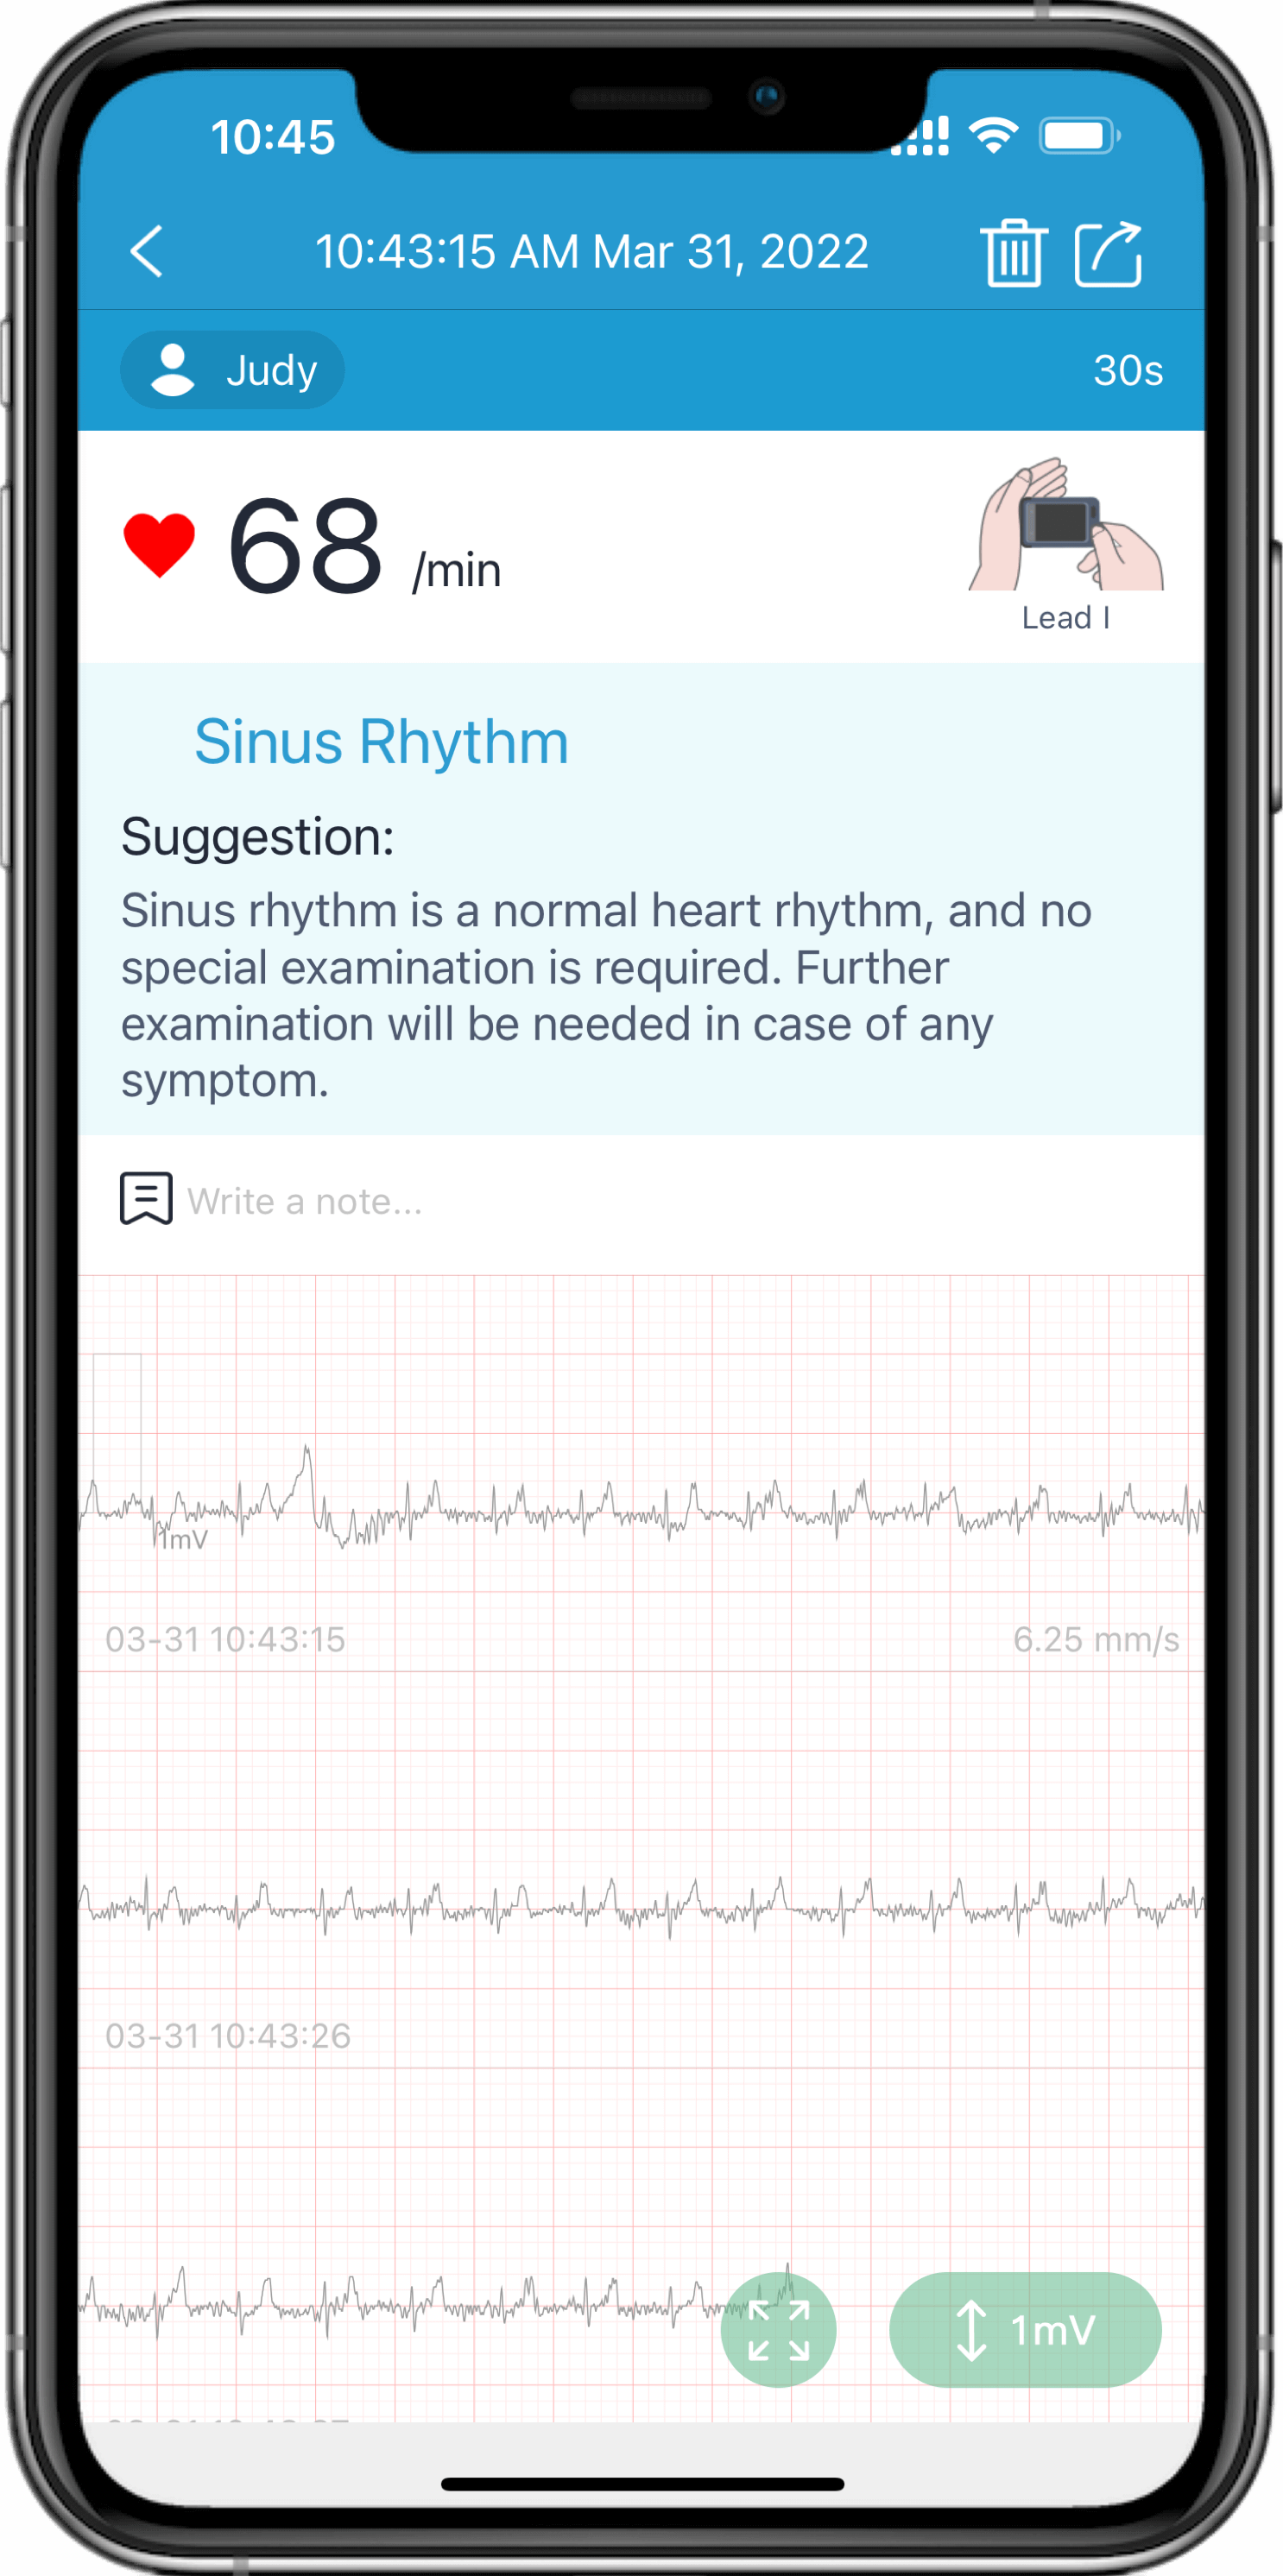 Herzprobleme per App erkennen